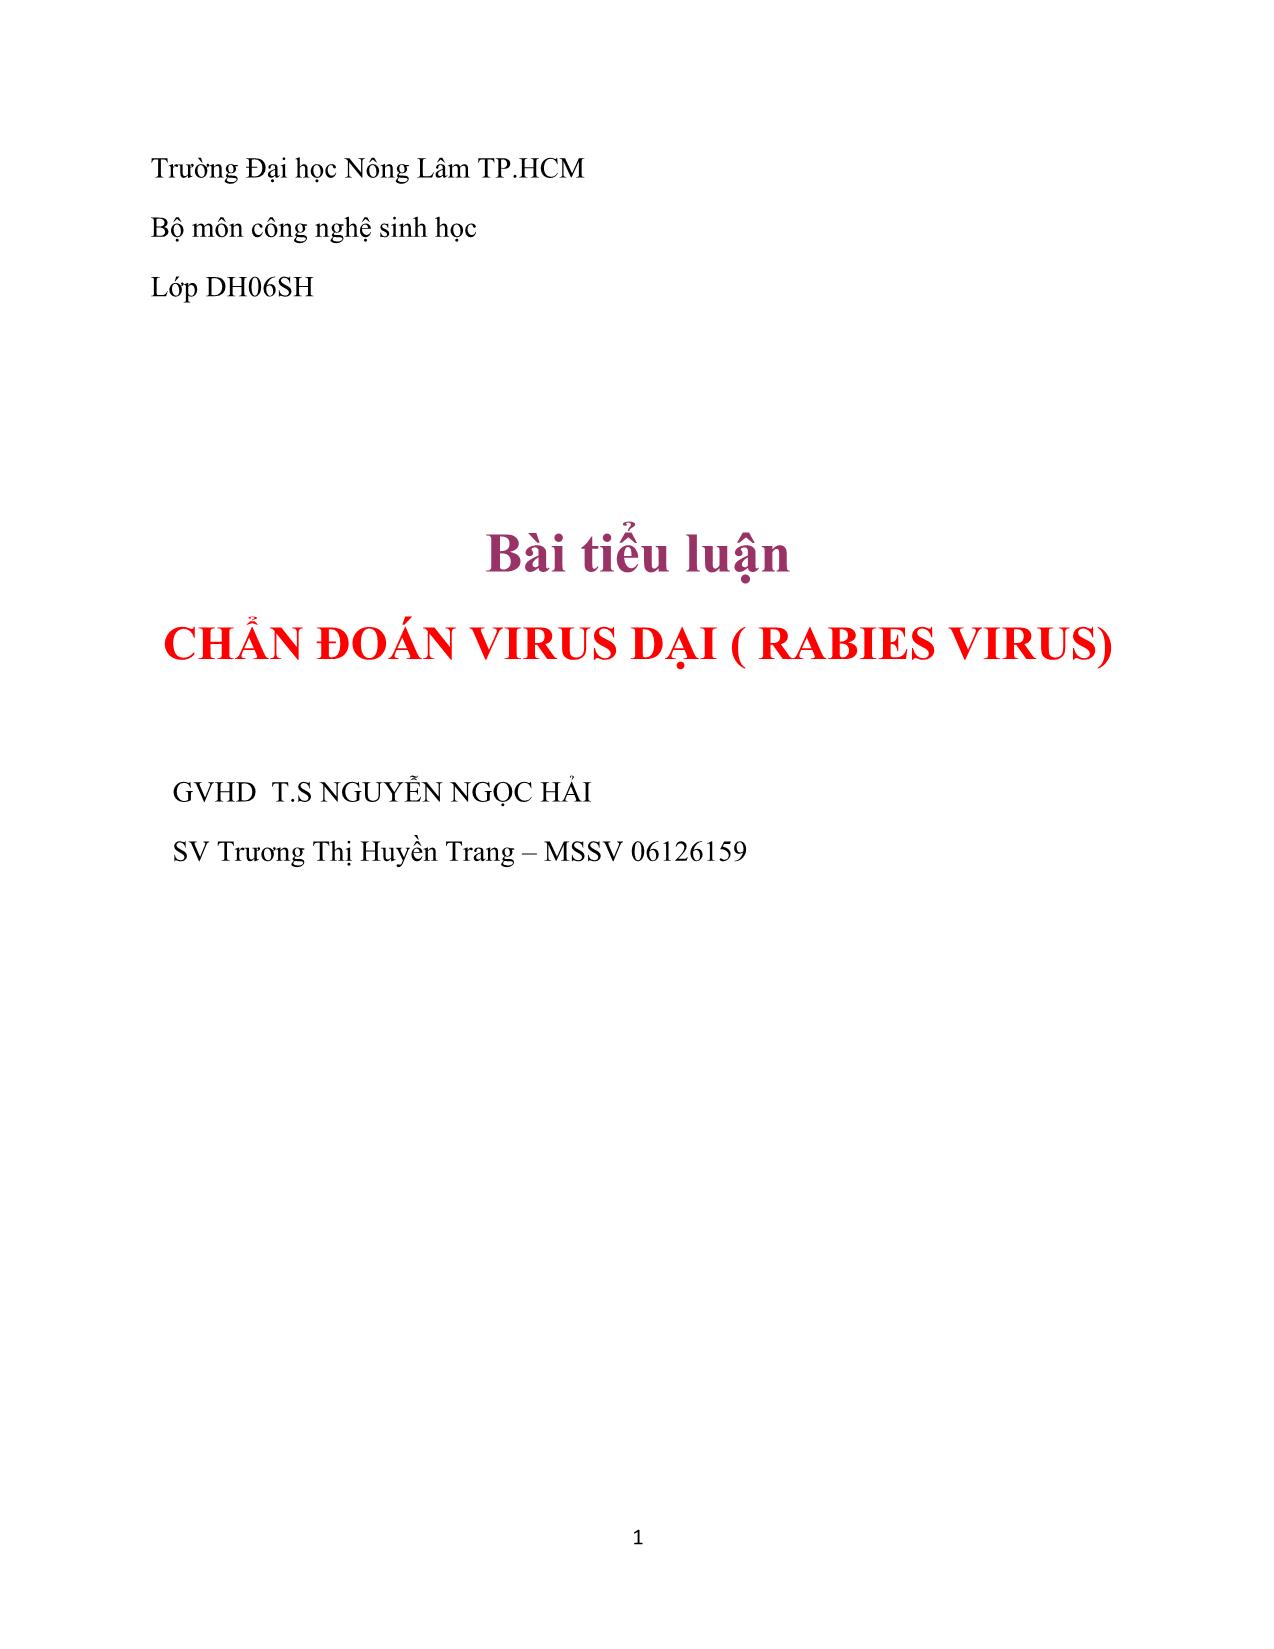 Đề tài Chẩn đoán virus dại ( rabies virus) trang 1